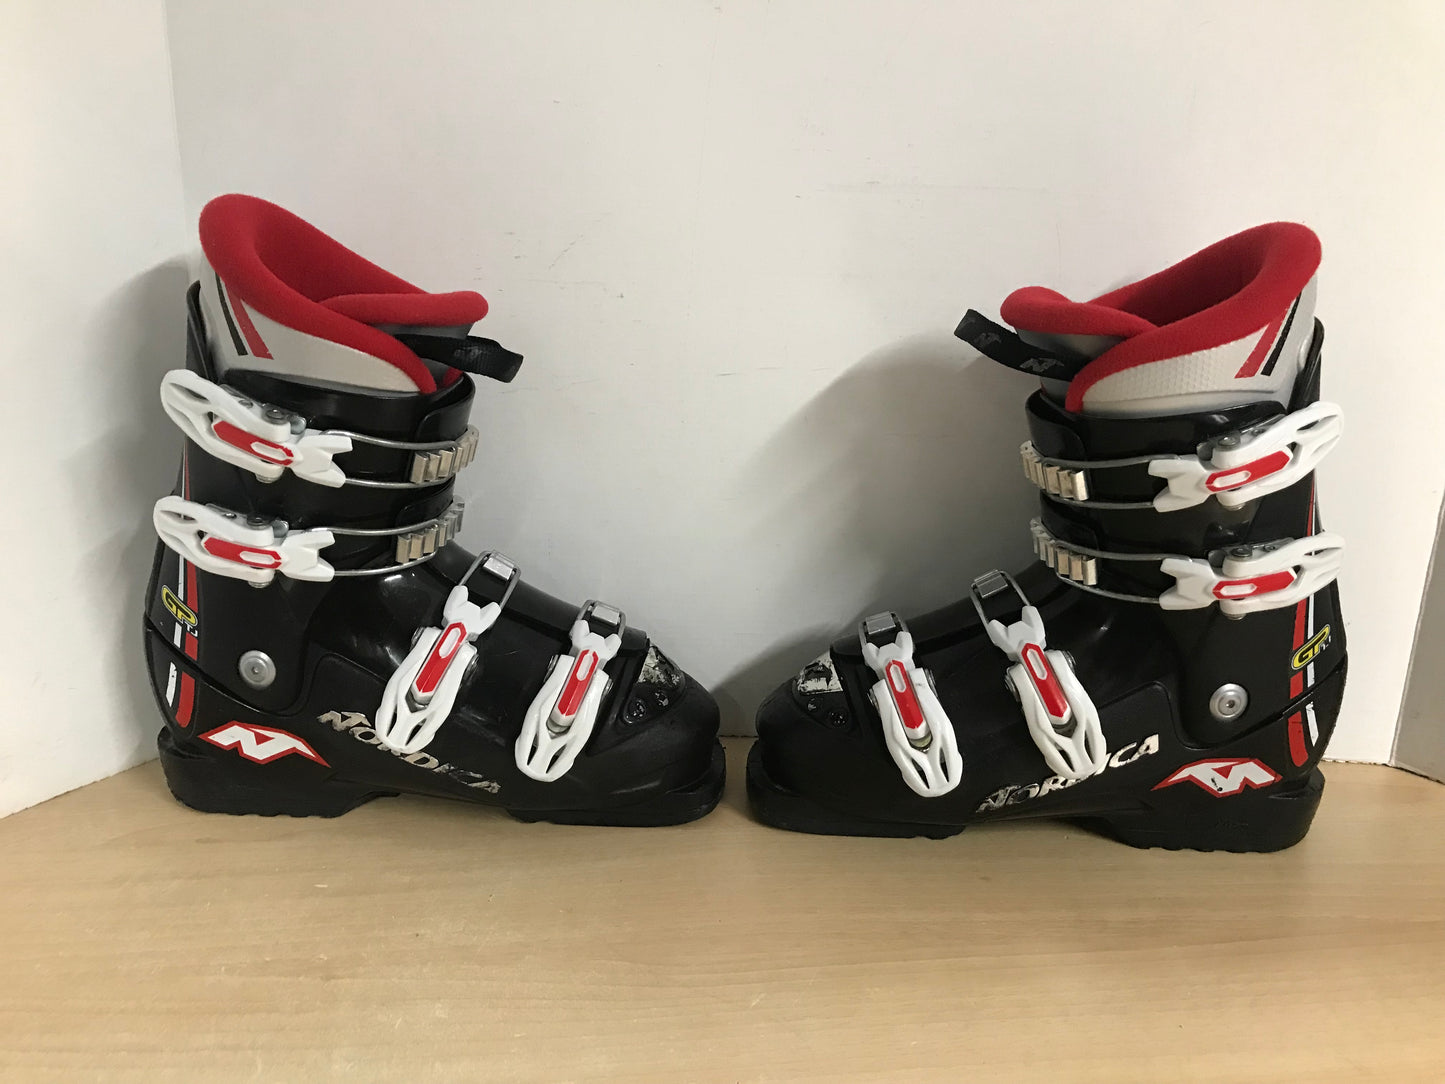 Ski Boots Mondo Size 23.0  Child Size 5-6 270 mm Nordica Black Red White Minor Wear